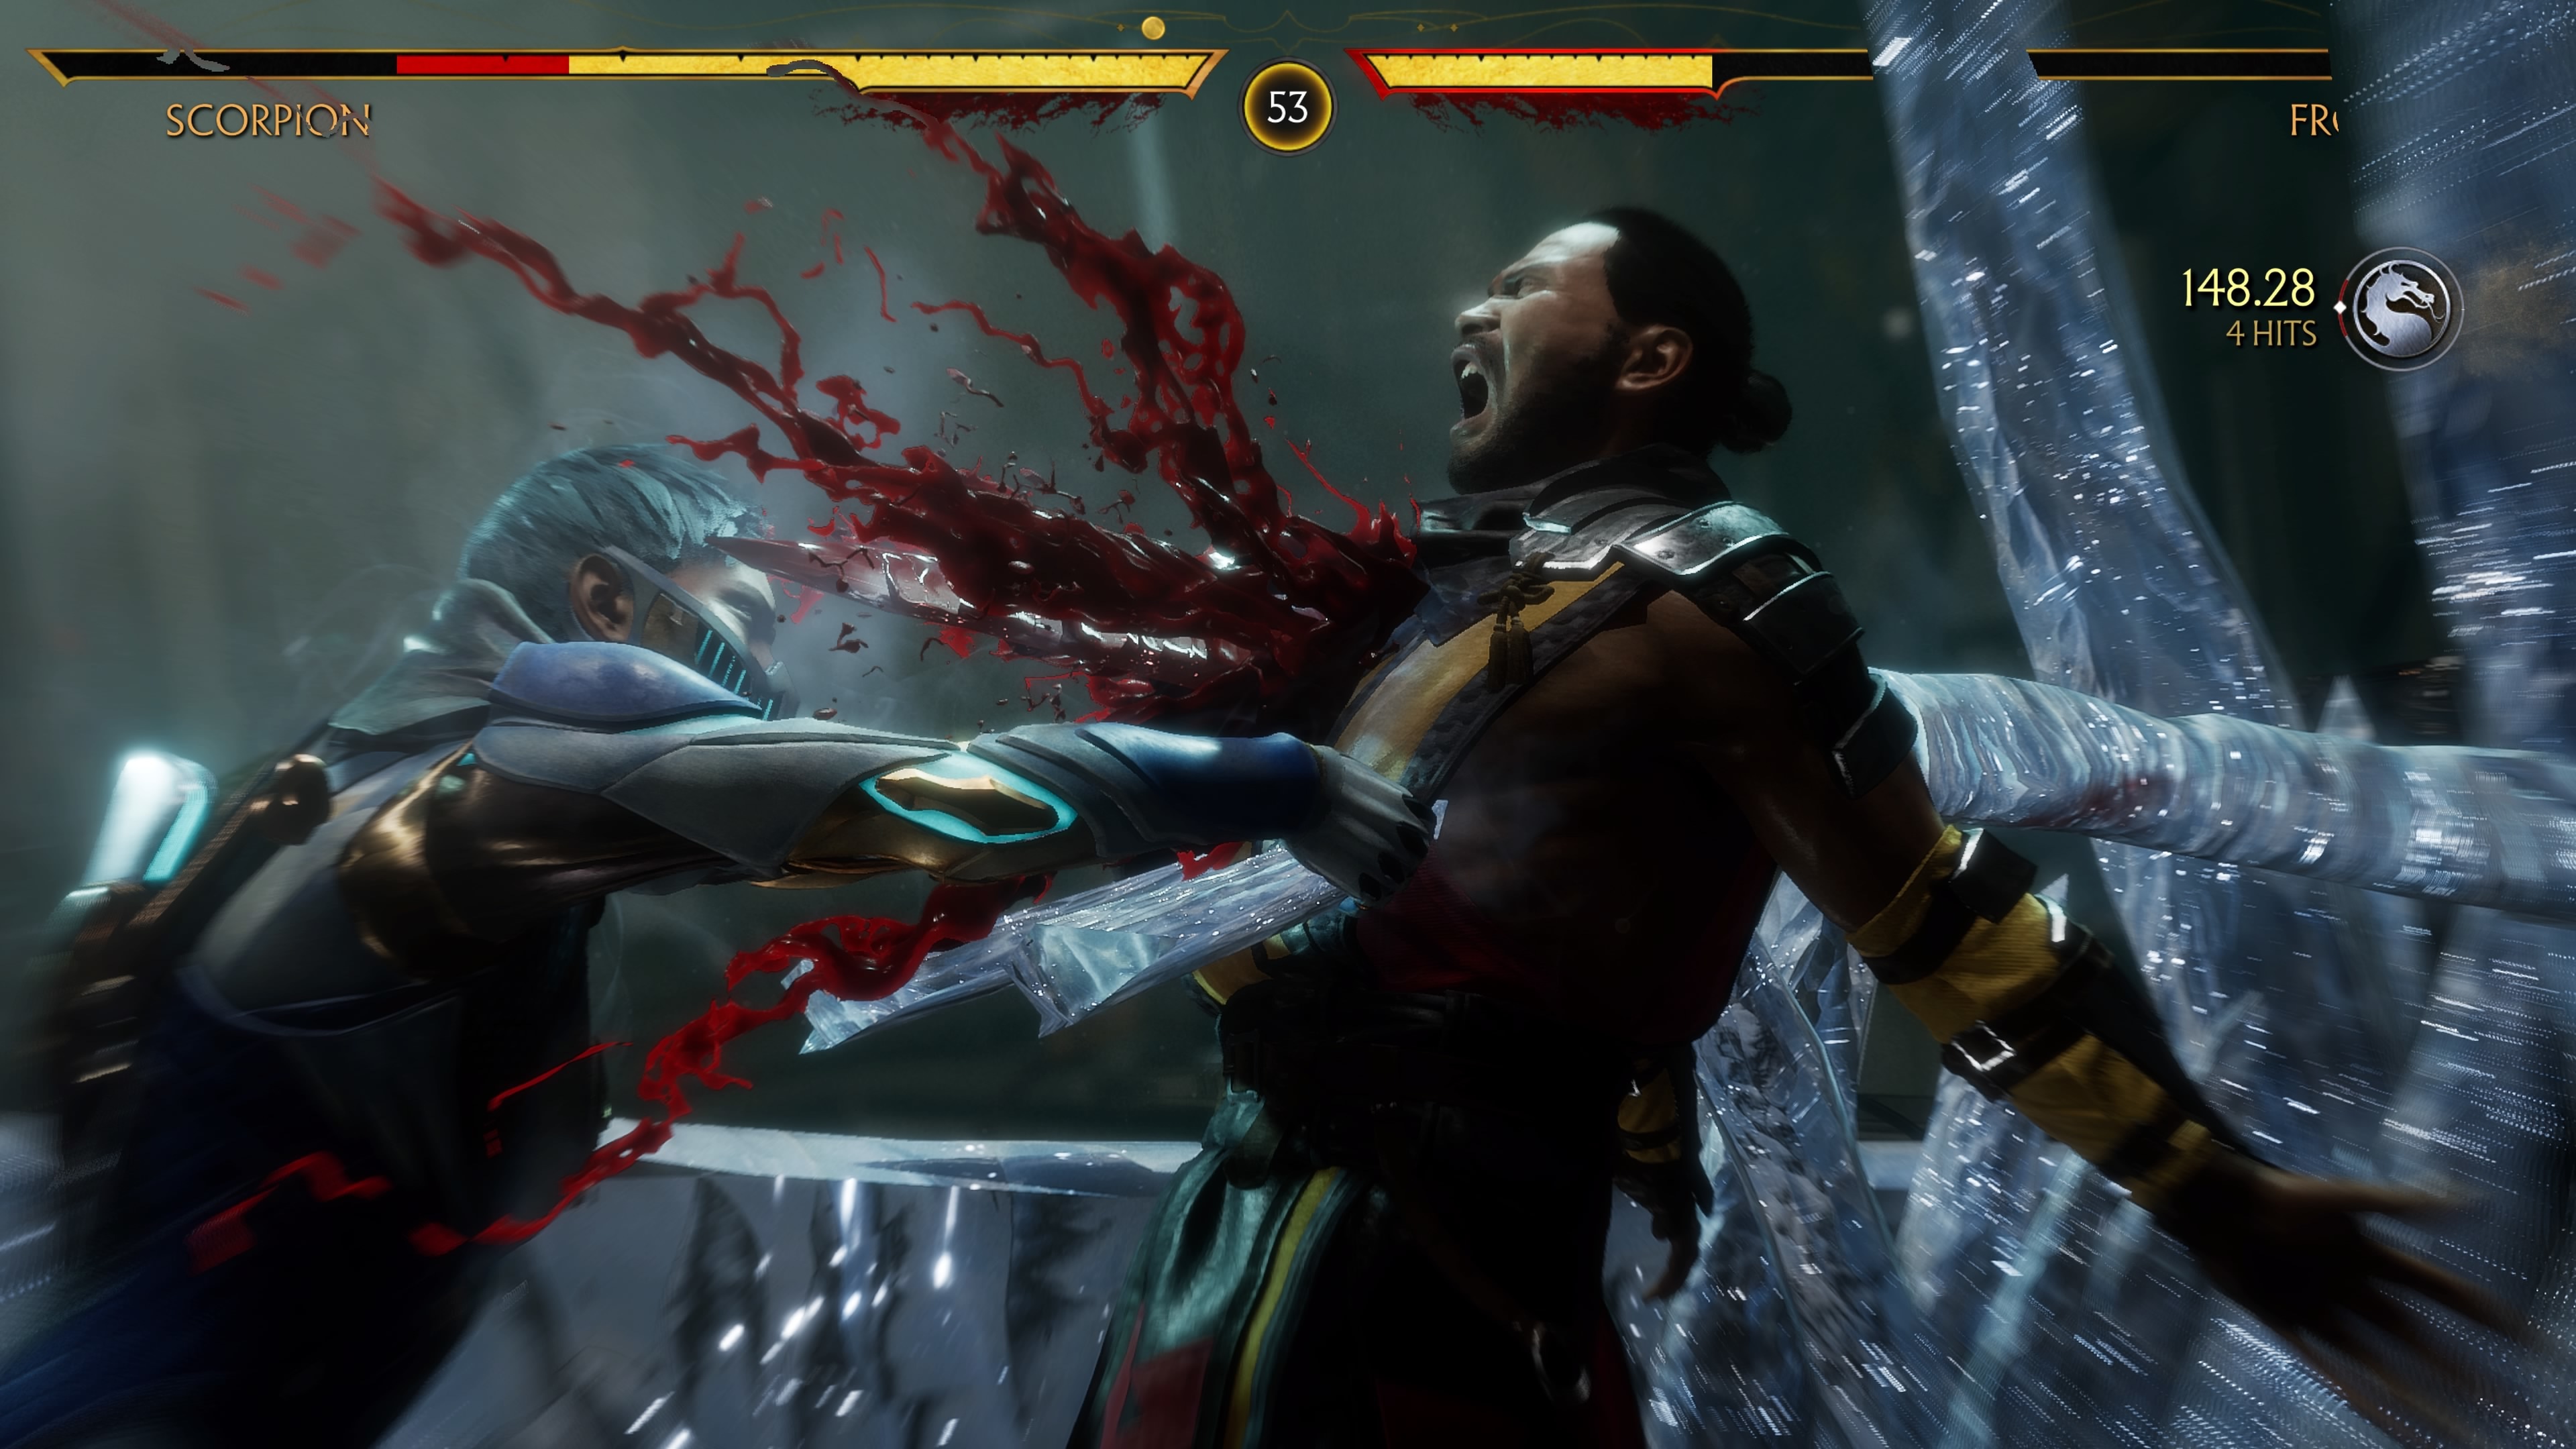 Ultimate Mortal Kombat Review - GameSpot